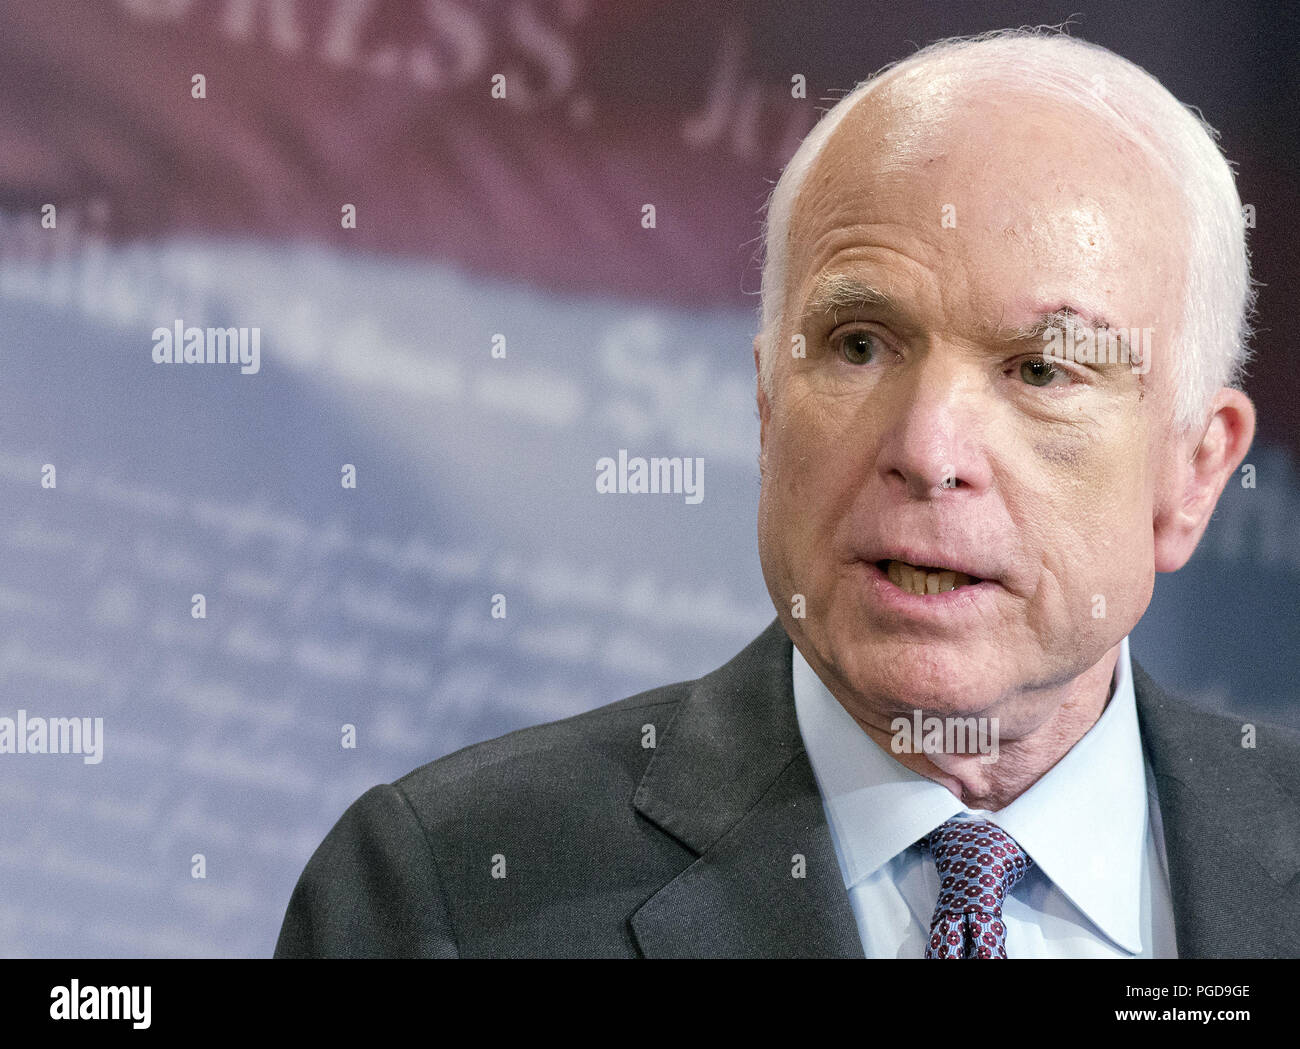 Le sénateur républicain américain John Mccain n'est plus la poursuite d'un traitement pour son cancer du cerveau, a annoncé sa famille. McCain, 81, a été diagnostiqué avec une forme agressive de tumeur cérébrale l'été dernier et avait été en traitement depuis juillet 2017. Il a quitté Washington pour être avec sa famille en Arizona, bien qu'il n'a toujours été un homme politique. Août 24, 2018. Sur la photo : 27 juillet, 2017 - Washington, DC, États-Unis - Le Sénateur John McCain annonce qu'il n'appuiera pas le "Magere Brug" abrogation de la Loi sur les soins abordables (ACA). Credit : Ron Sachs/CNP/ZUMA/Alamy Fil Live News Banque D'Images